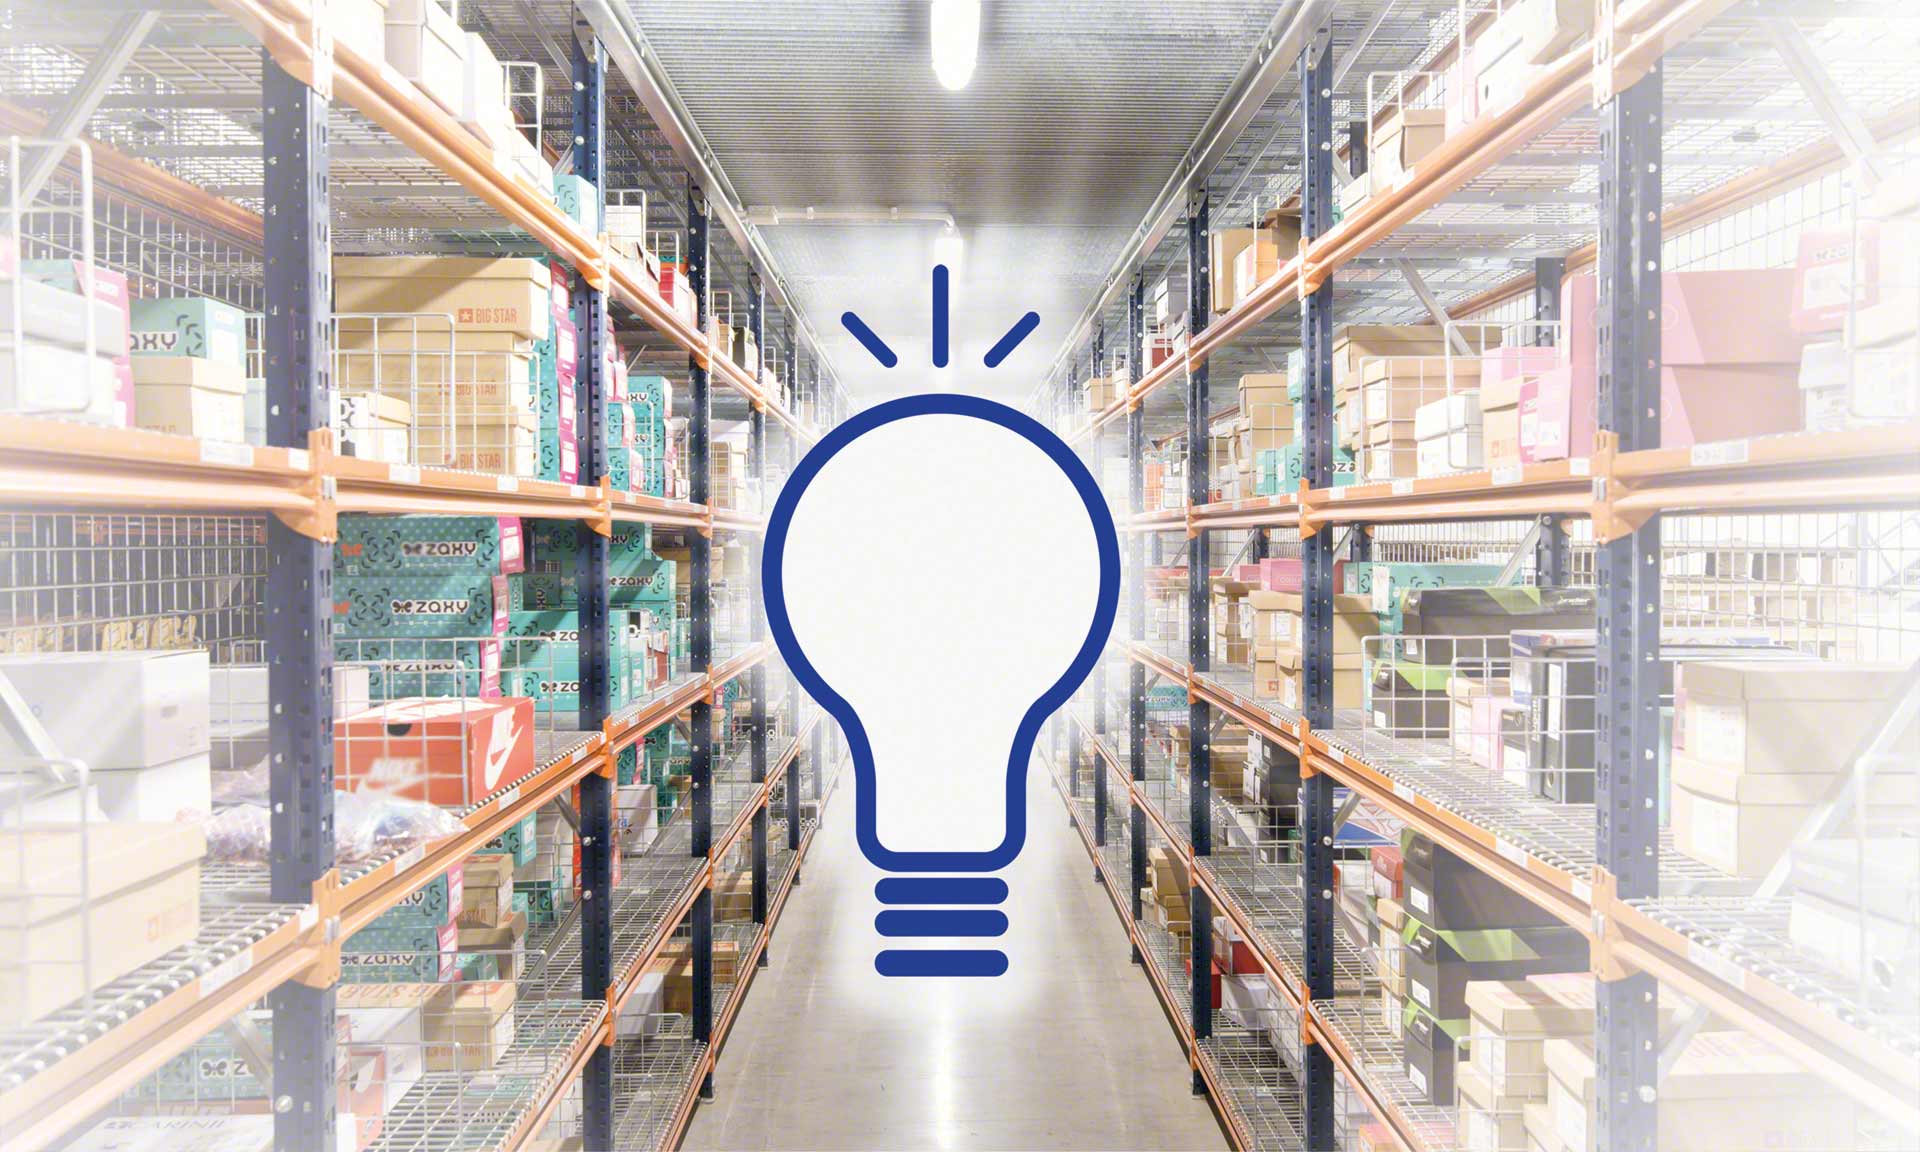 L’illuminazione del magazzino semplifica il lavoro degli operatori e apporta maggiore sicurezza